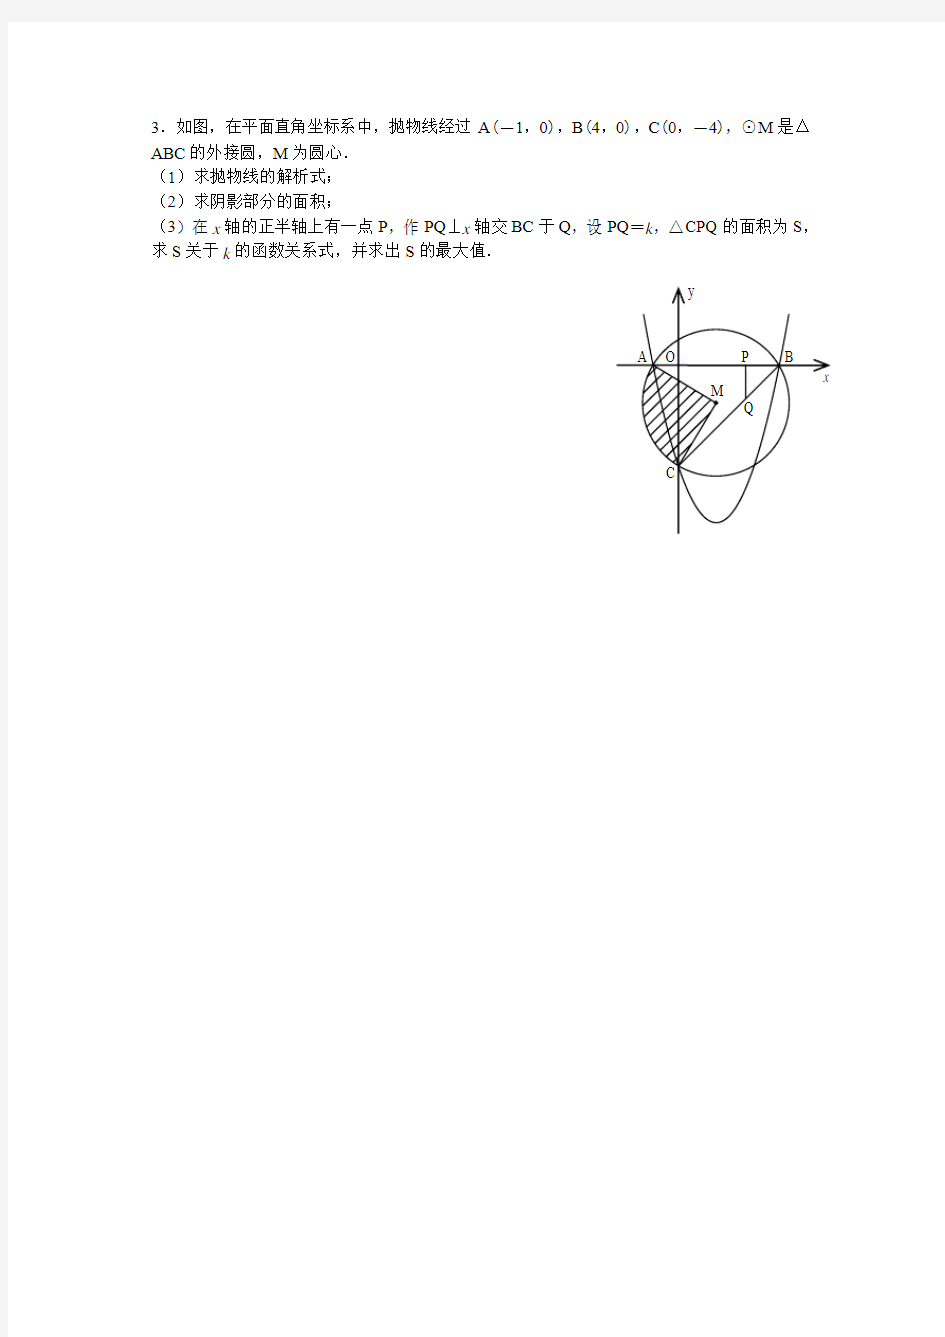 二次函数与圆综合动点问题